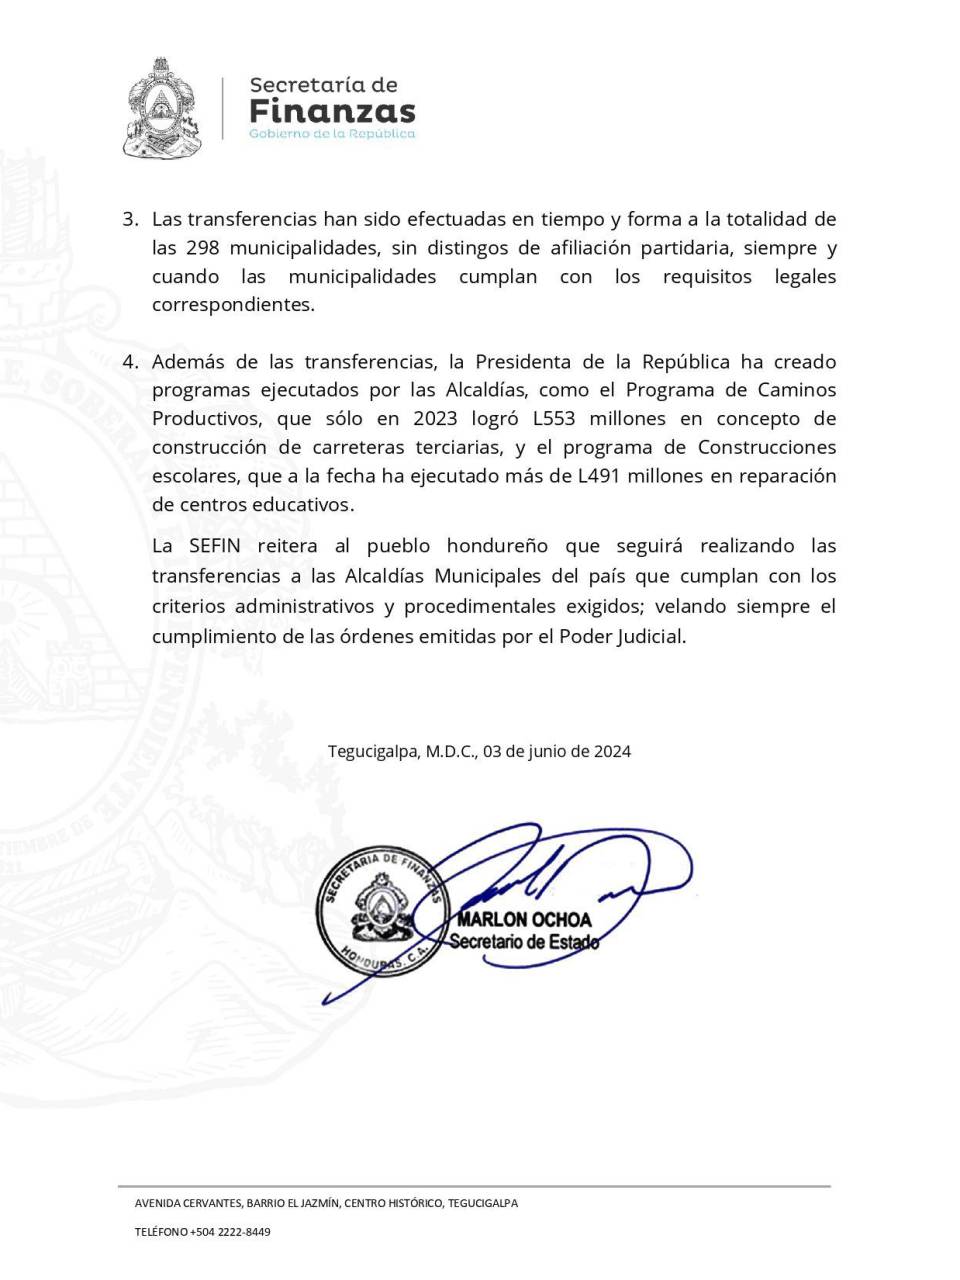 Finanzas acusa a Roberto Contreras de “negligente” por no liquidar transferencias de SPS